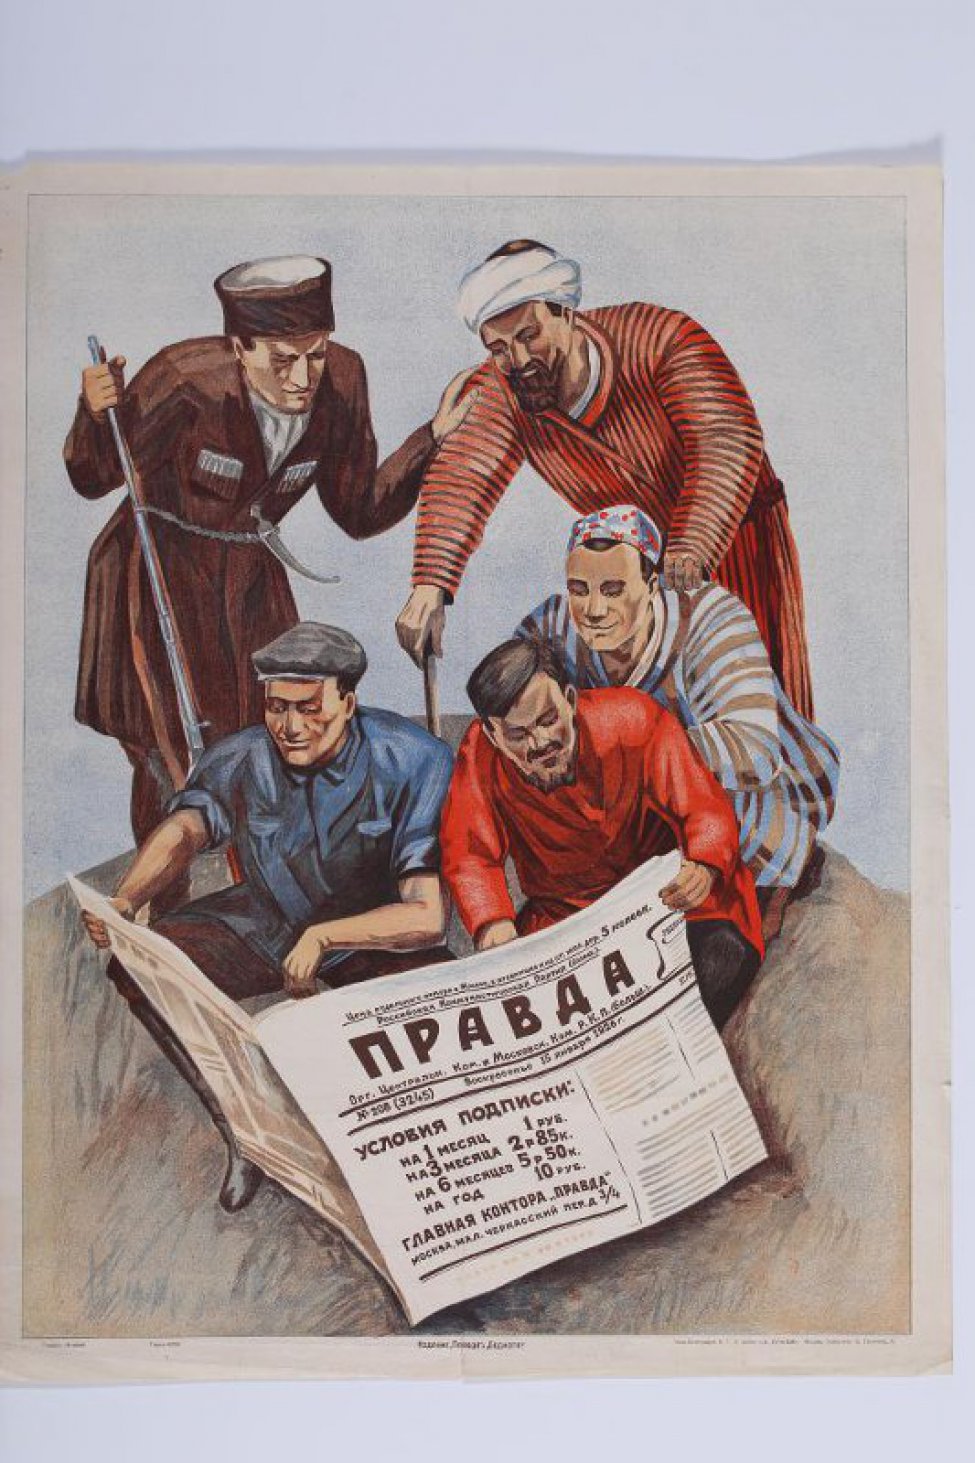 Изображено пять мужских фигур разных национальностей за чтением газеты " Правда".